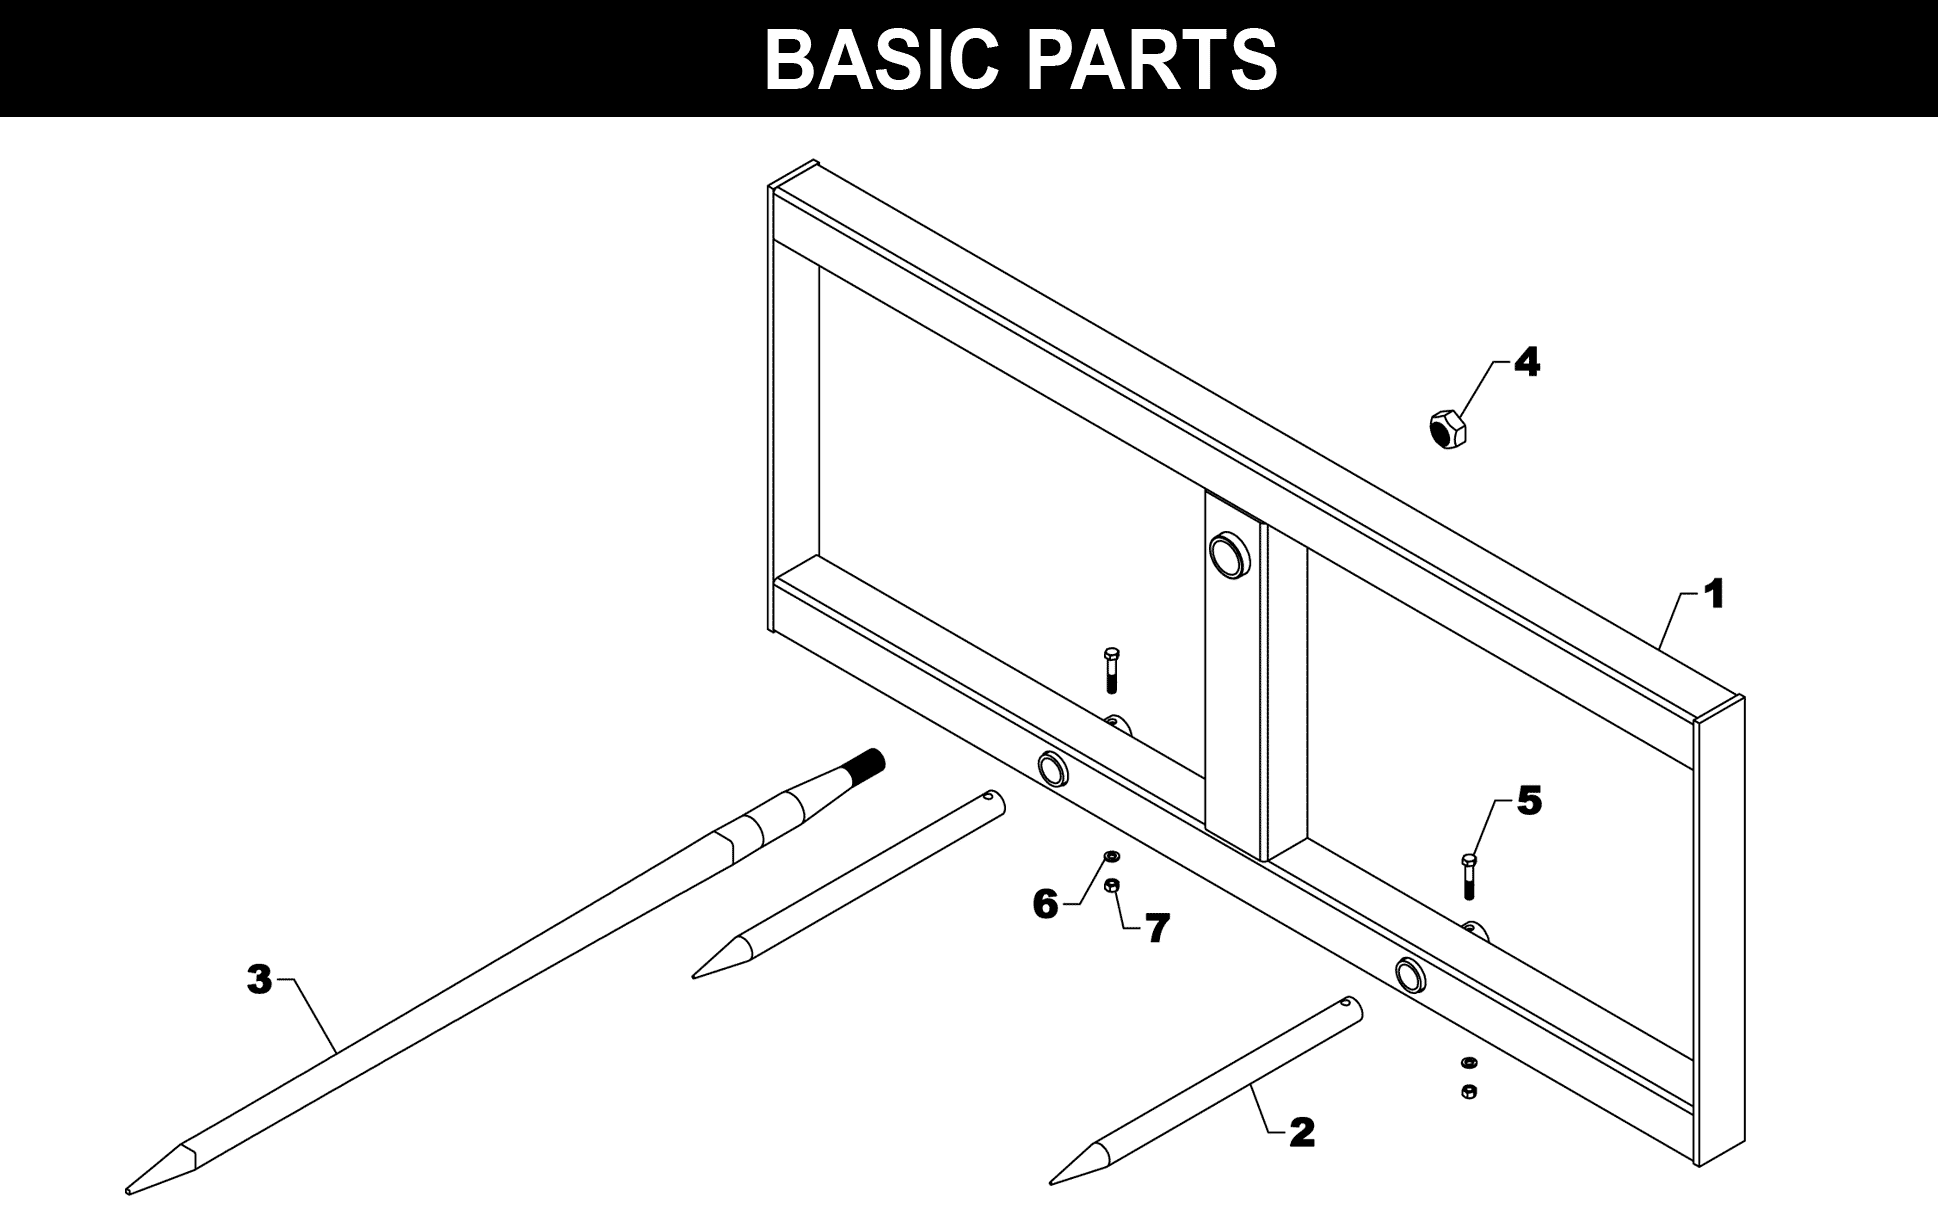 SP-76 Basic Parts